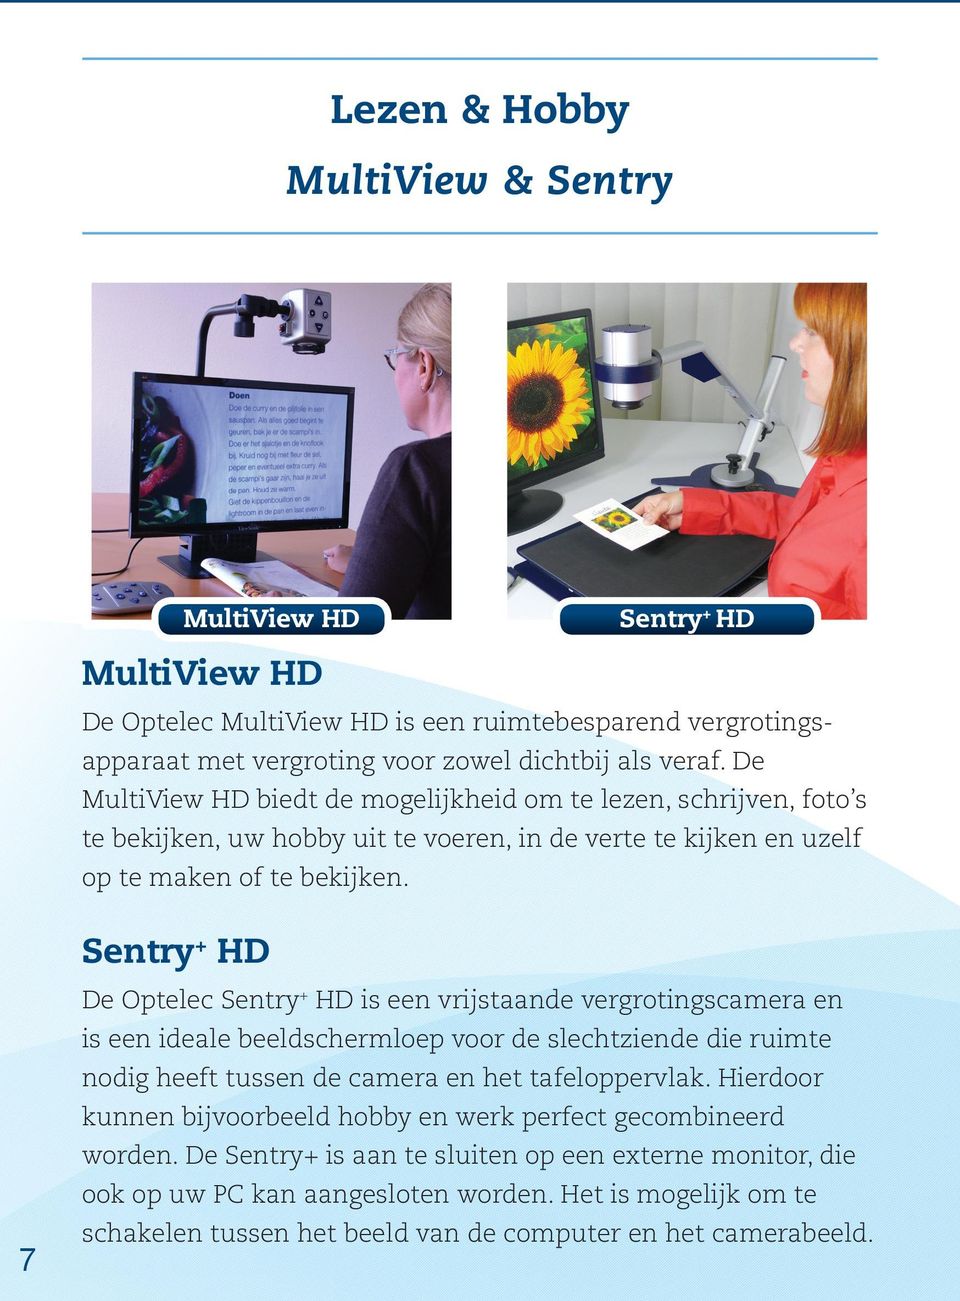 Sentry+ HD De Optelec Sentry+ HD is een vrijstaande vergrotingscamera en is een ideale beeldschermloep voor de slechtziende die ruimte nodig heeft tussen de camera en het tafeloppervlak.